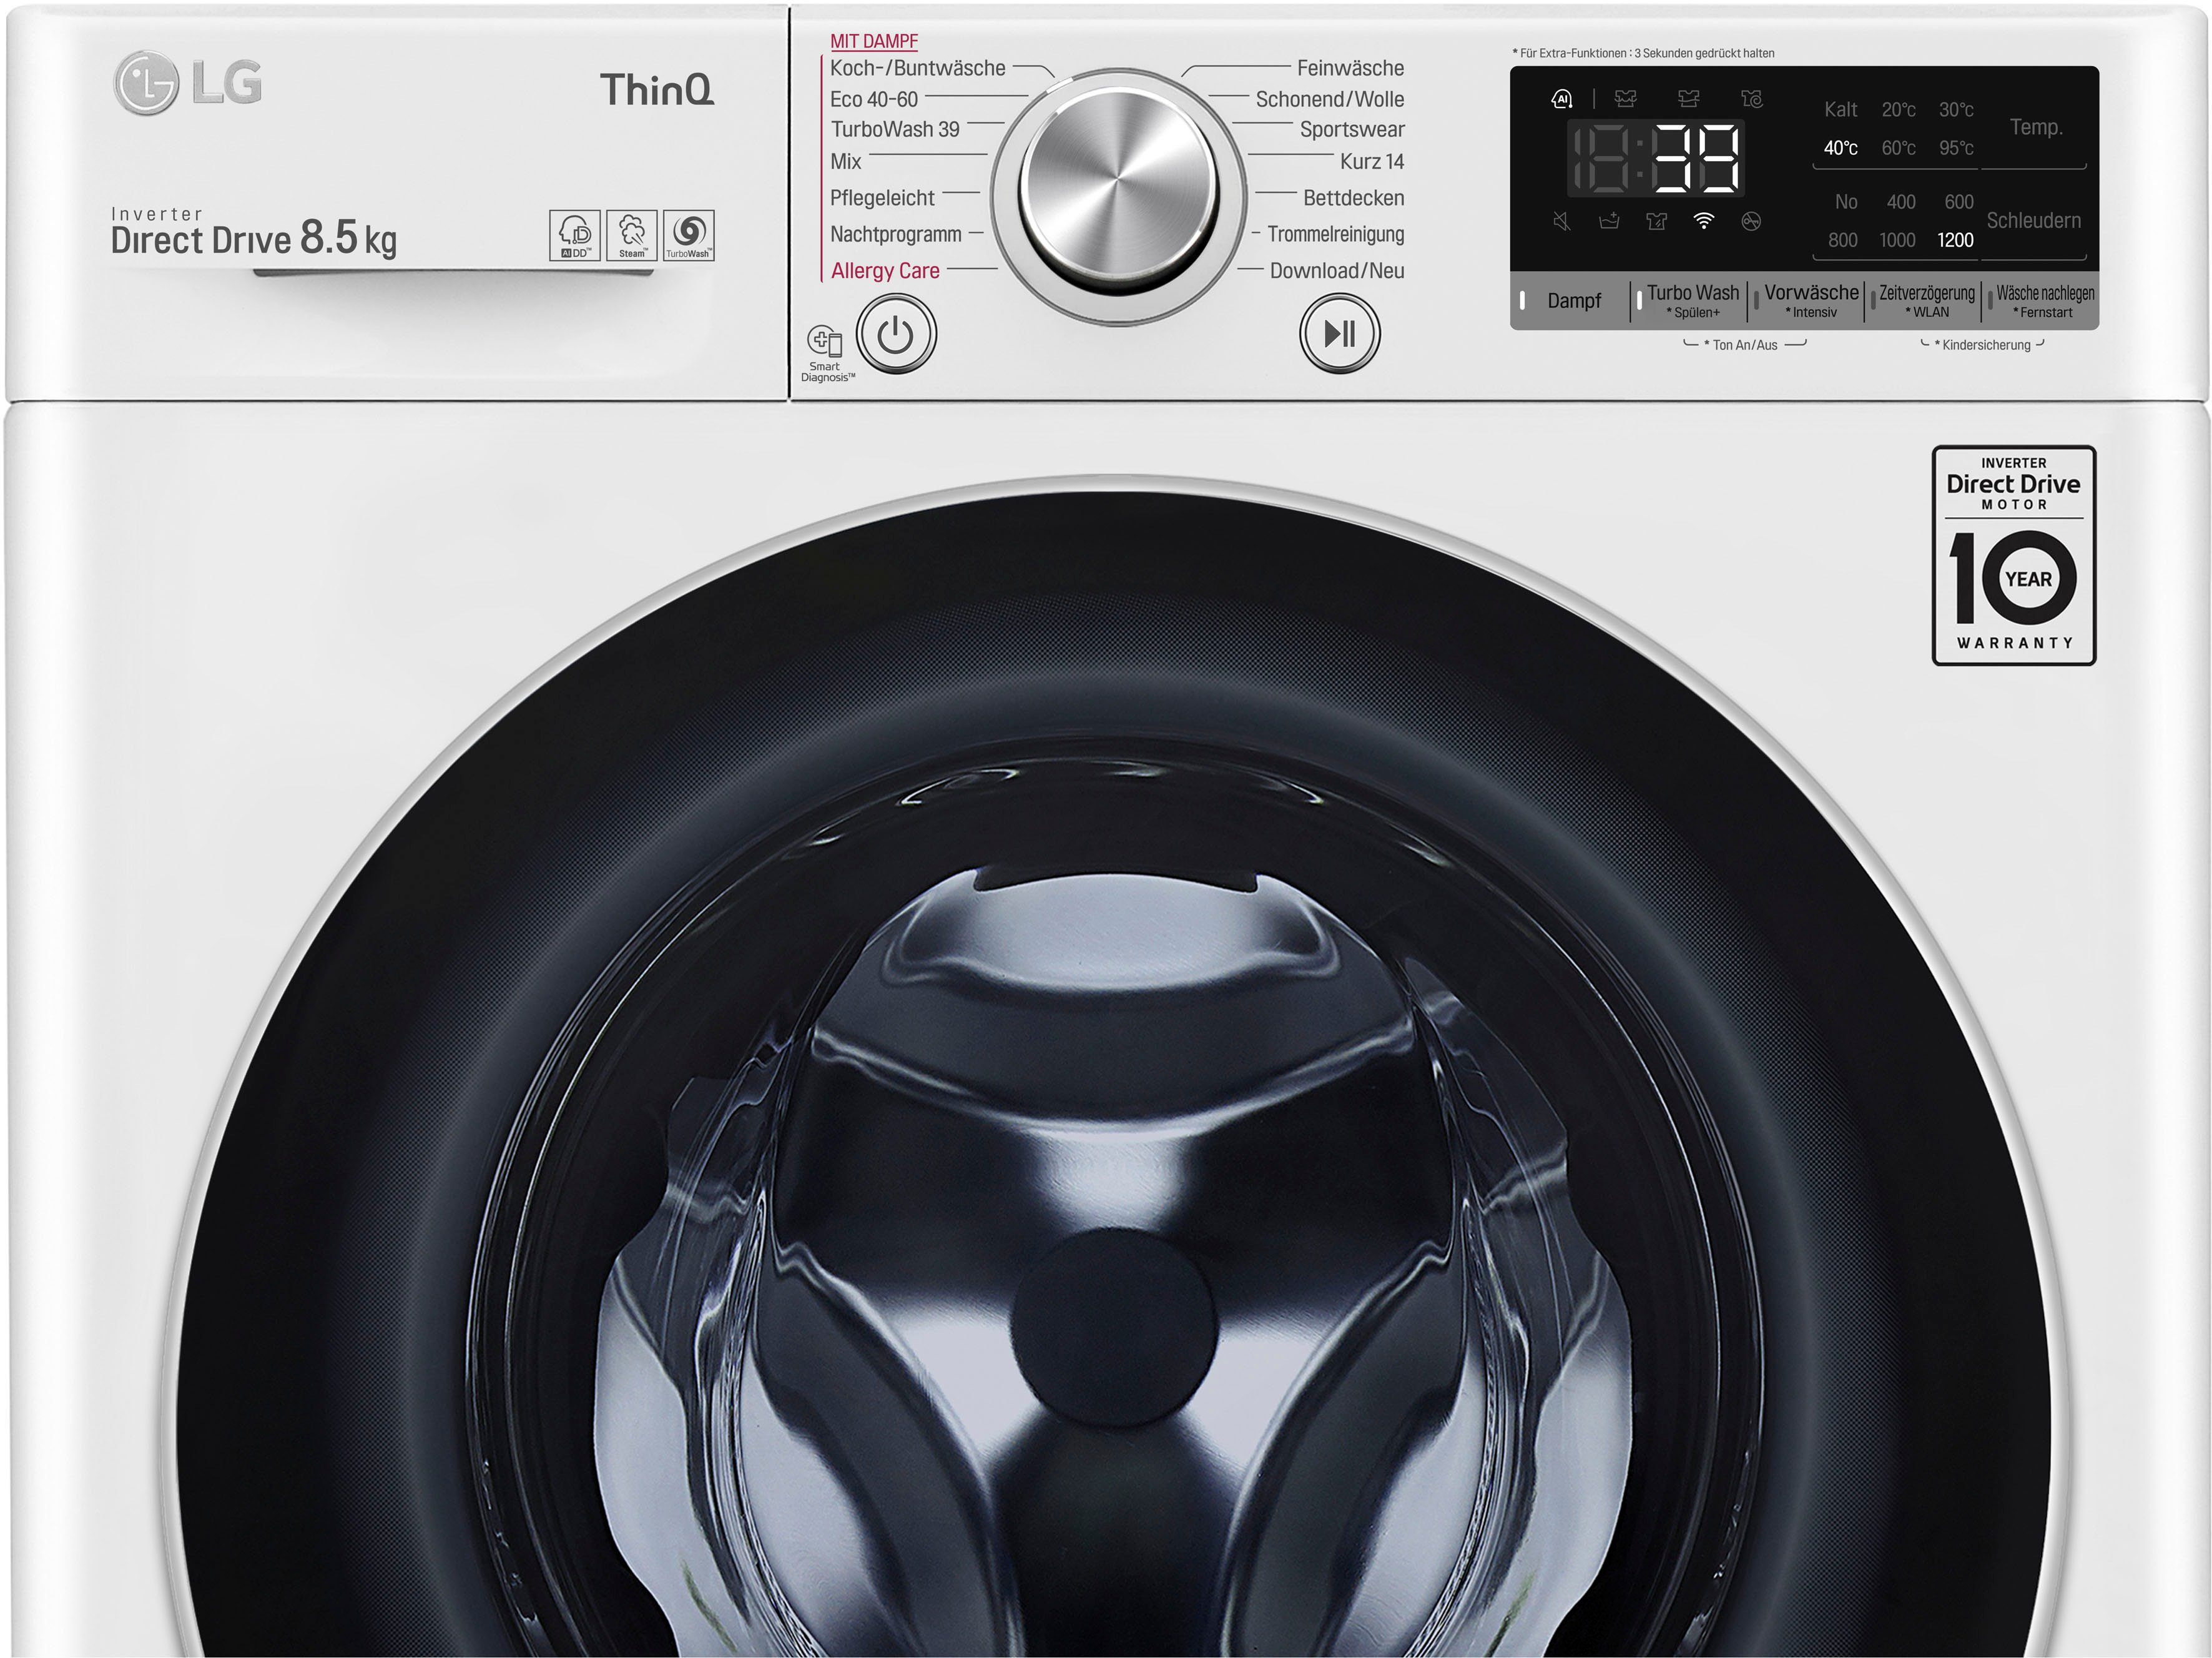 Waschen 39 in LG Minuten - TurboWash® U/min, nur 1200 F2V7SLIM8E, kg, Waschmaschine 8,5